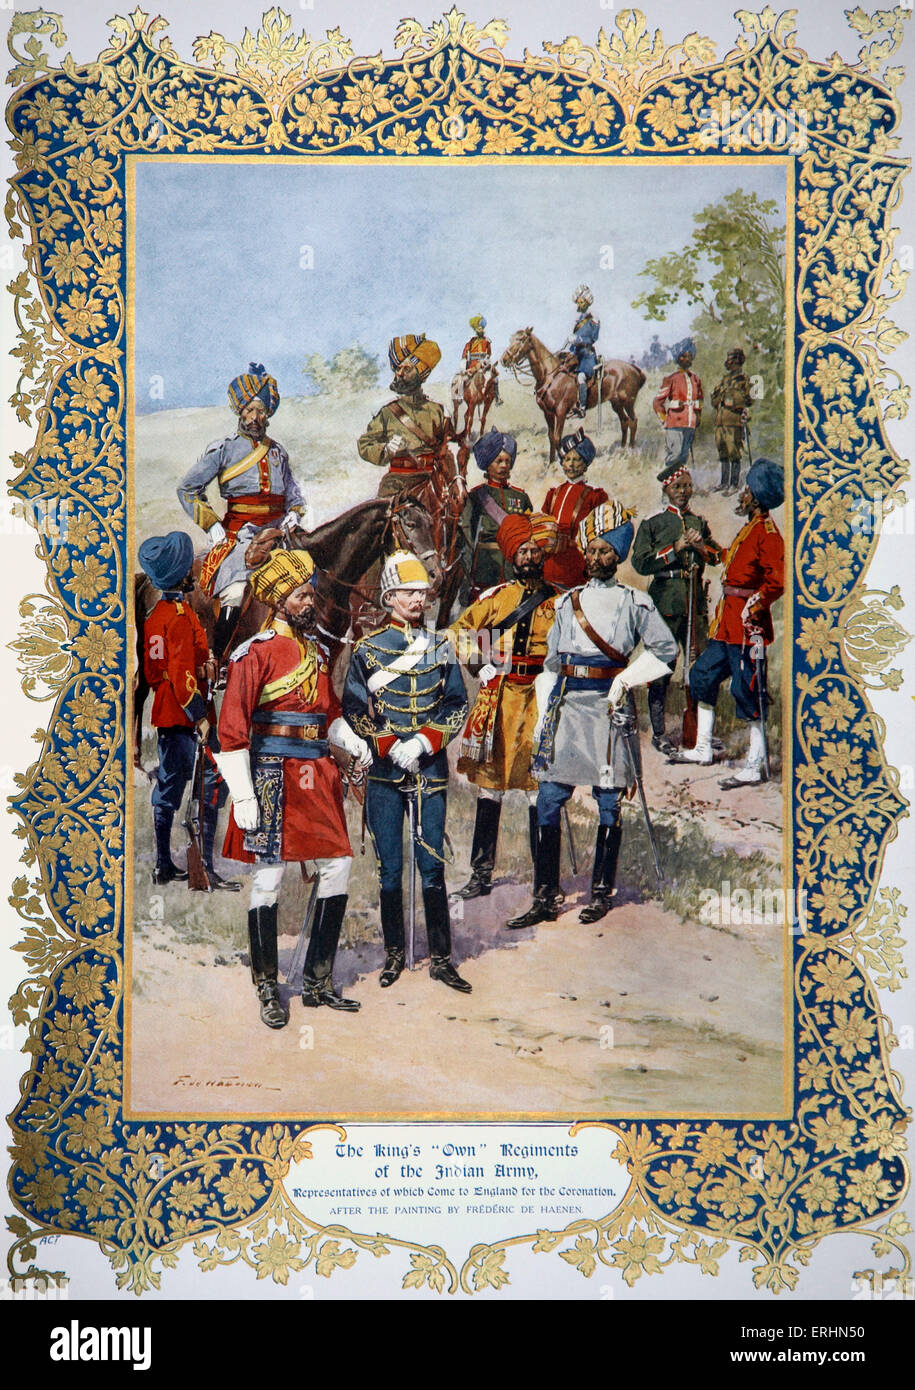 "Il Re "la propria' reggimenti nell'esercito indiano, rappresentanti dei quali provengono in Inghilterra per l'incoronazione. Dipinto di Foto Stock